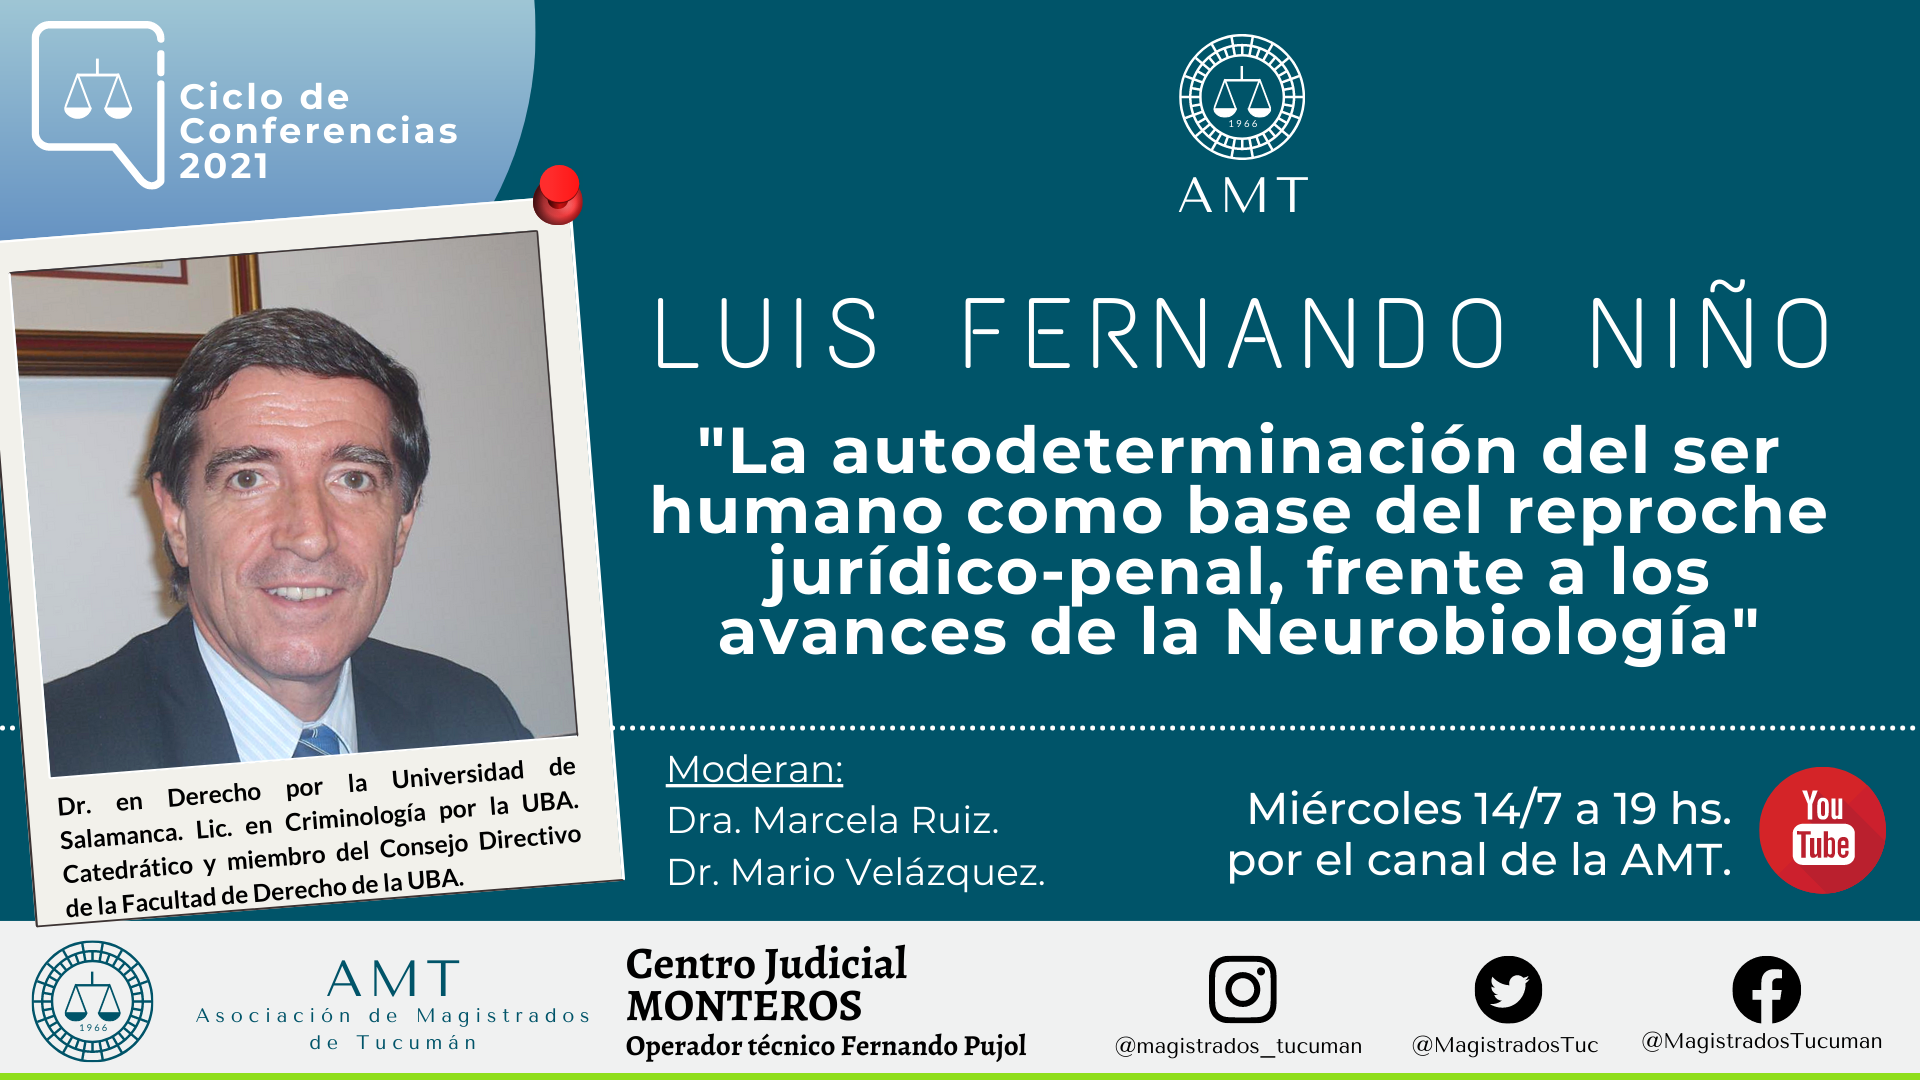 Vuelva a ver la conferencia de Luis Fernando Niño «La autodeterminación del ser humano»